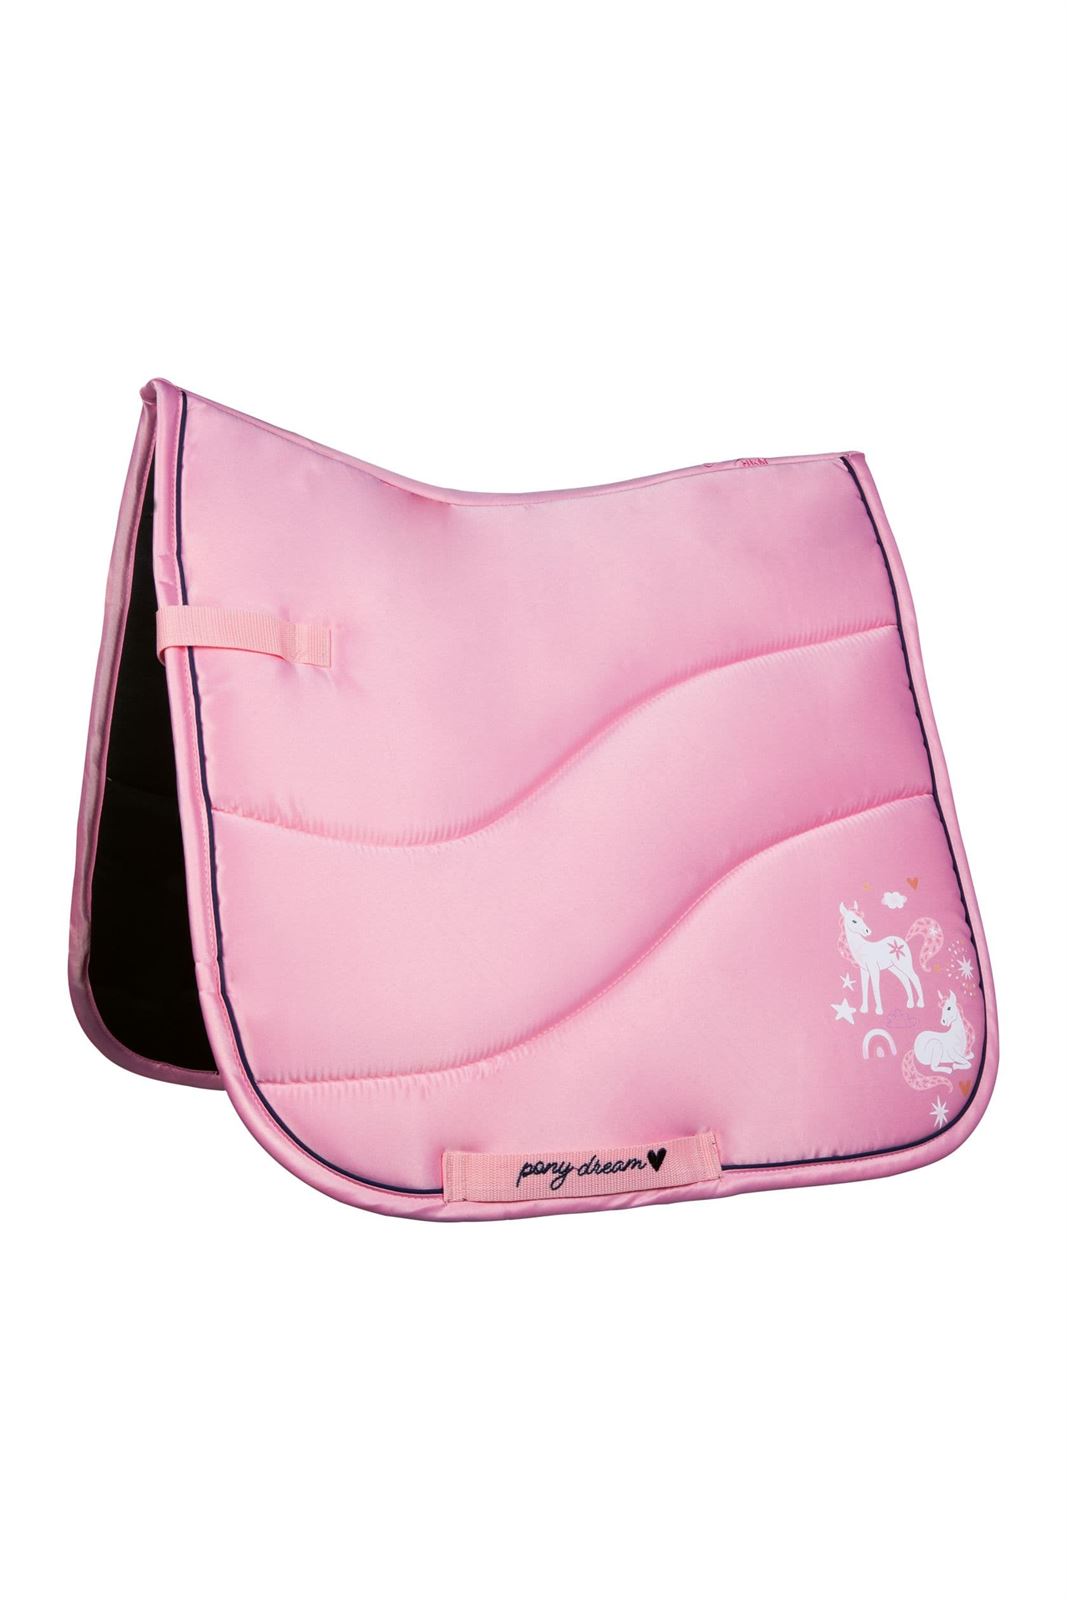 Mantilla HKM Pony Dream color rosa - Imagen 1